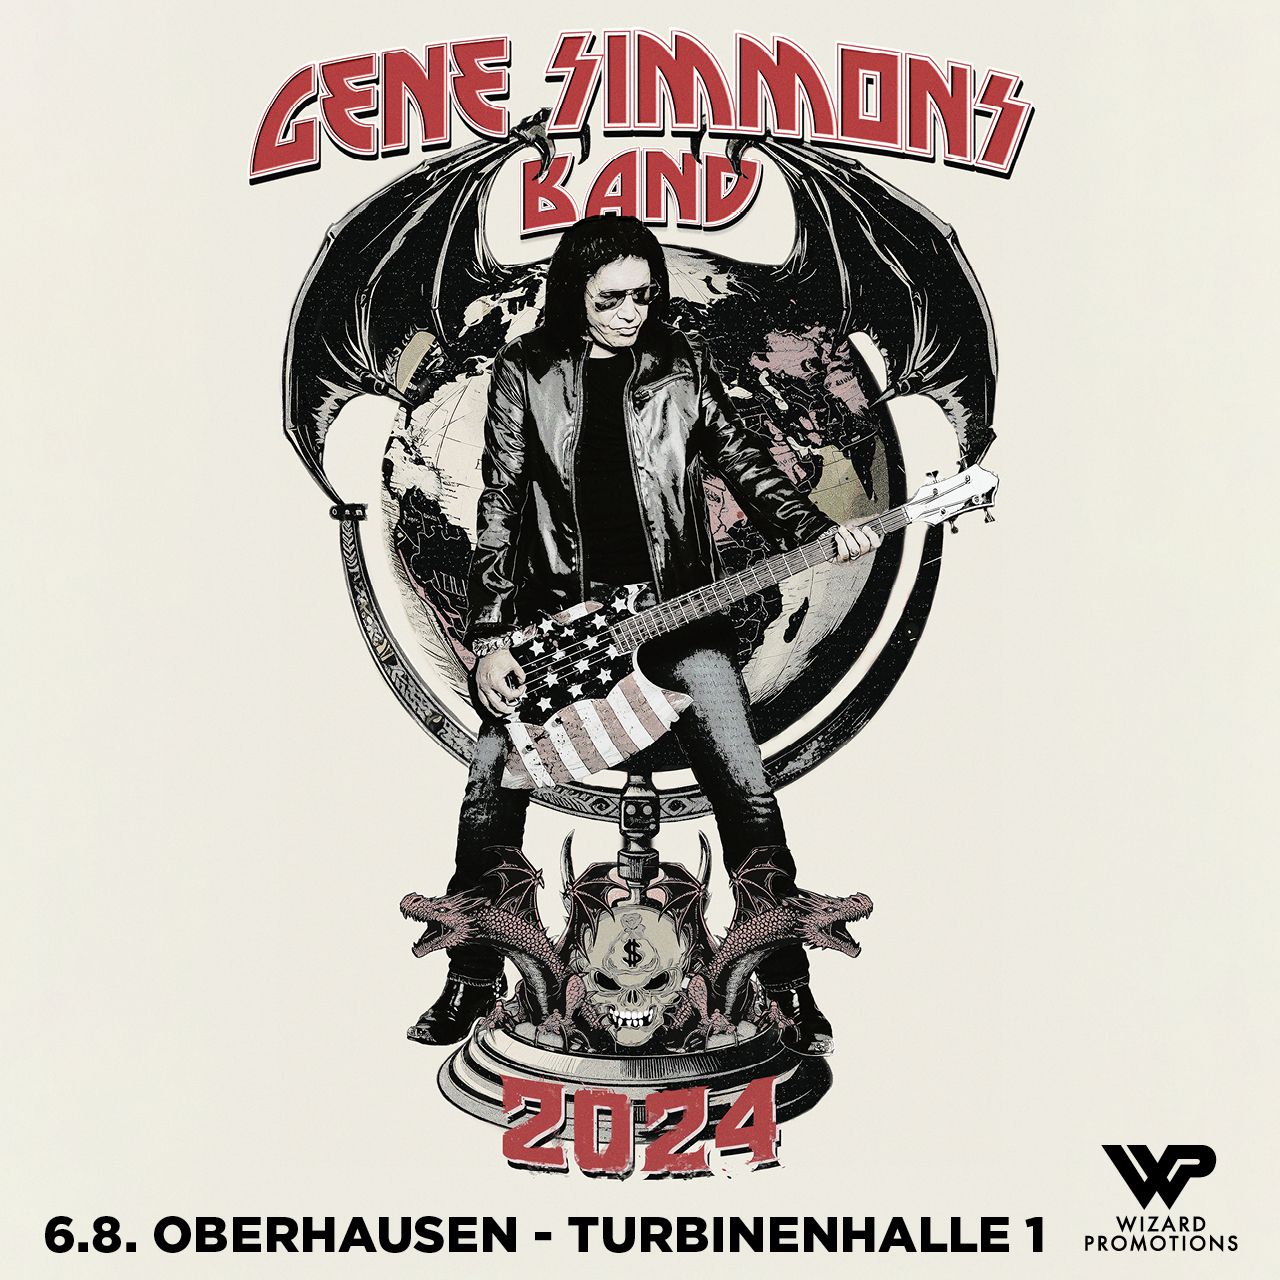 Gene Simmons Band kommt nach Deutschland